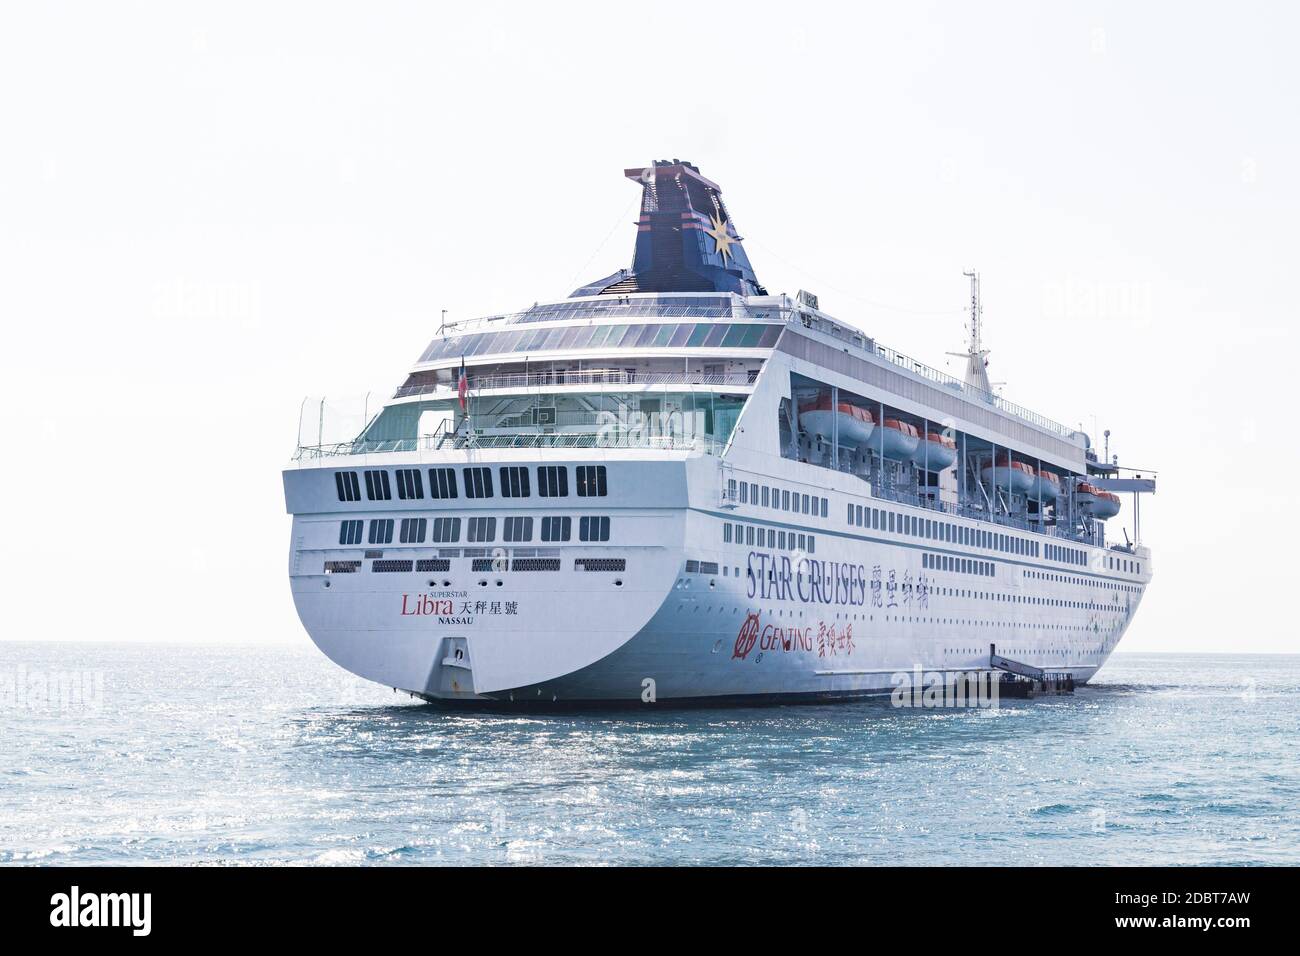 Star Cruises Superstar Libra beendete den öffentlichen Kreuzfahrtbetrieb am 28. Juni 2018. Sie wird umstellen, um andere Vorkehrungen für Genting Hong zu erleichtern Stockfoto